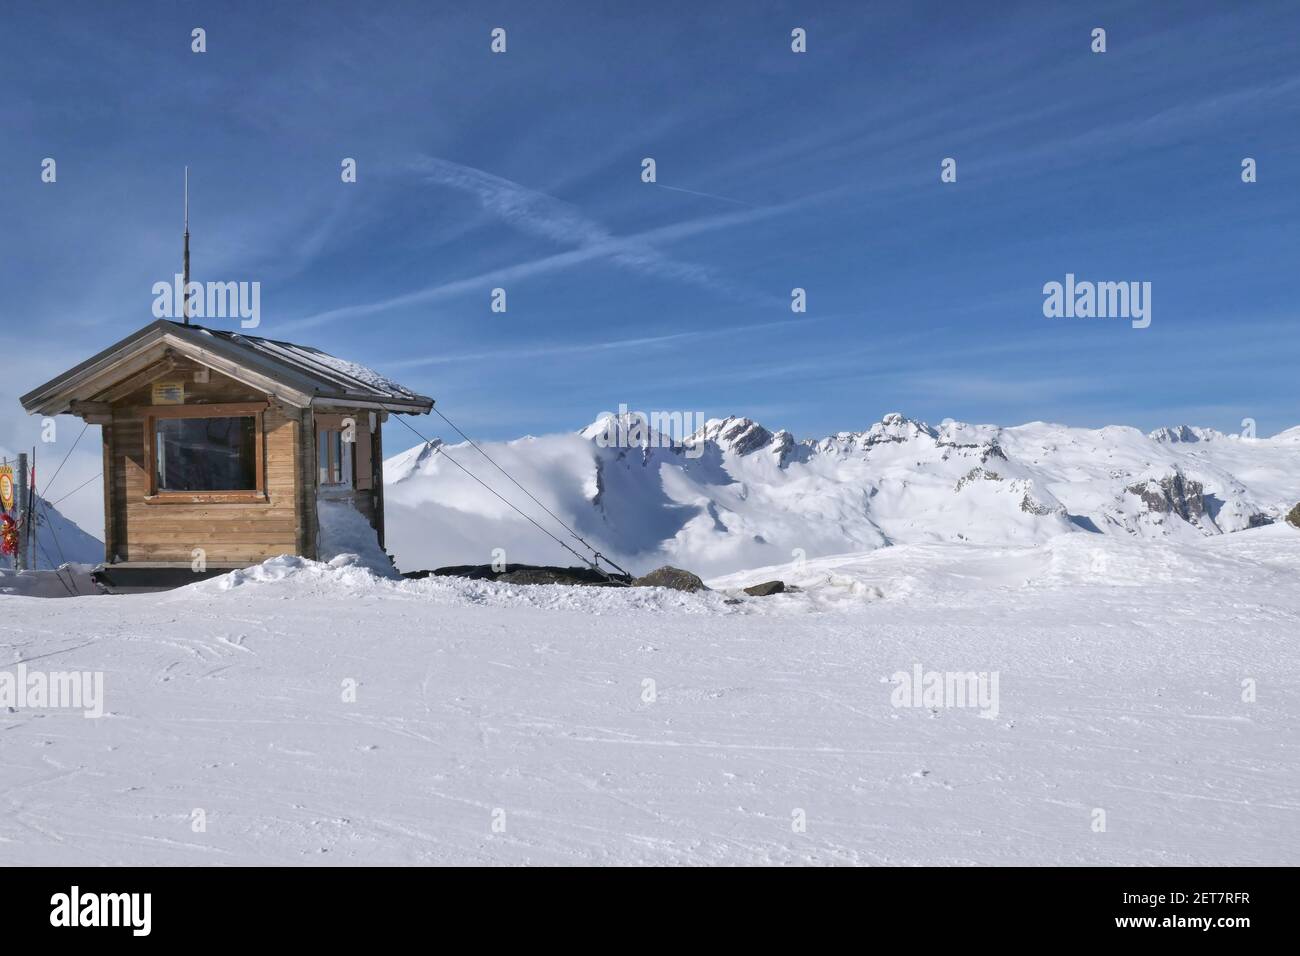 La Thuile ski resort, winter mountain view. Service cabin Stock Photo -  Alamy